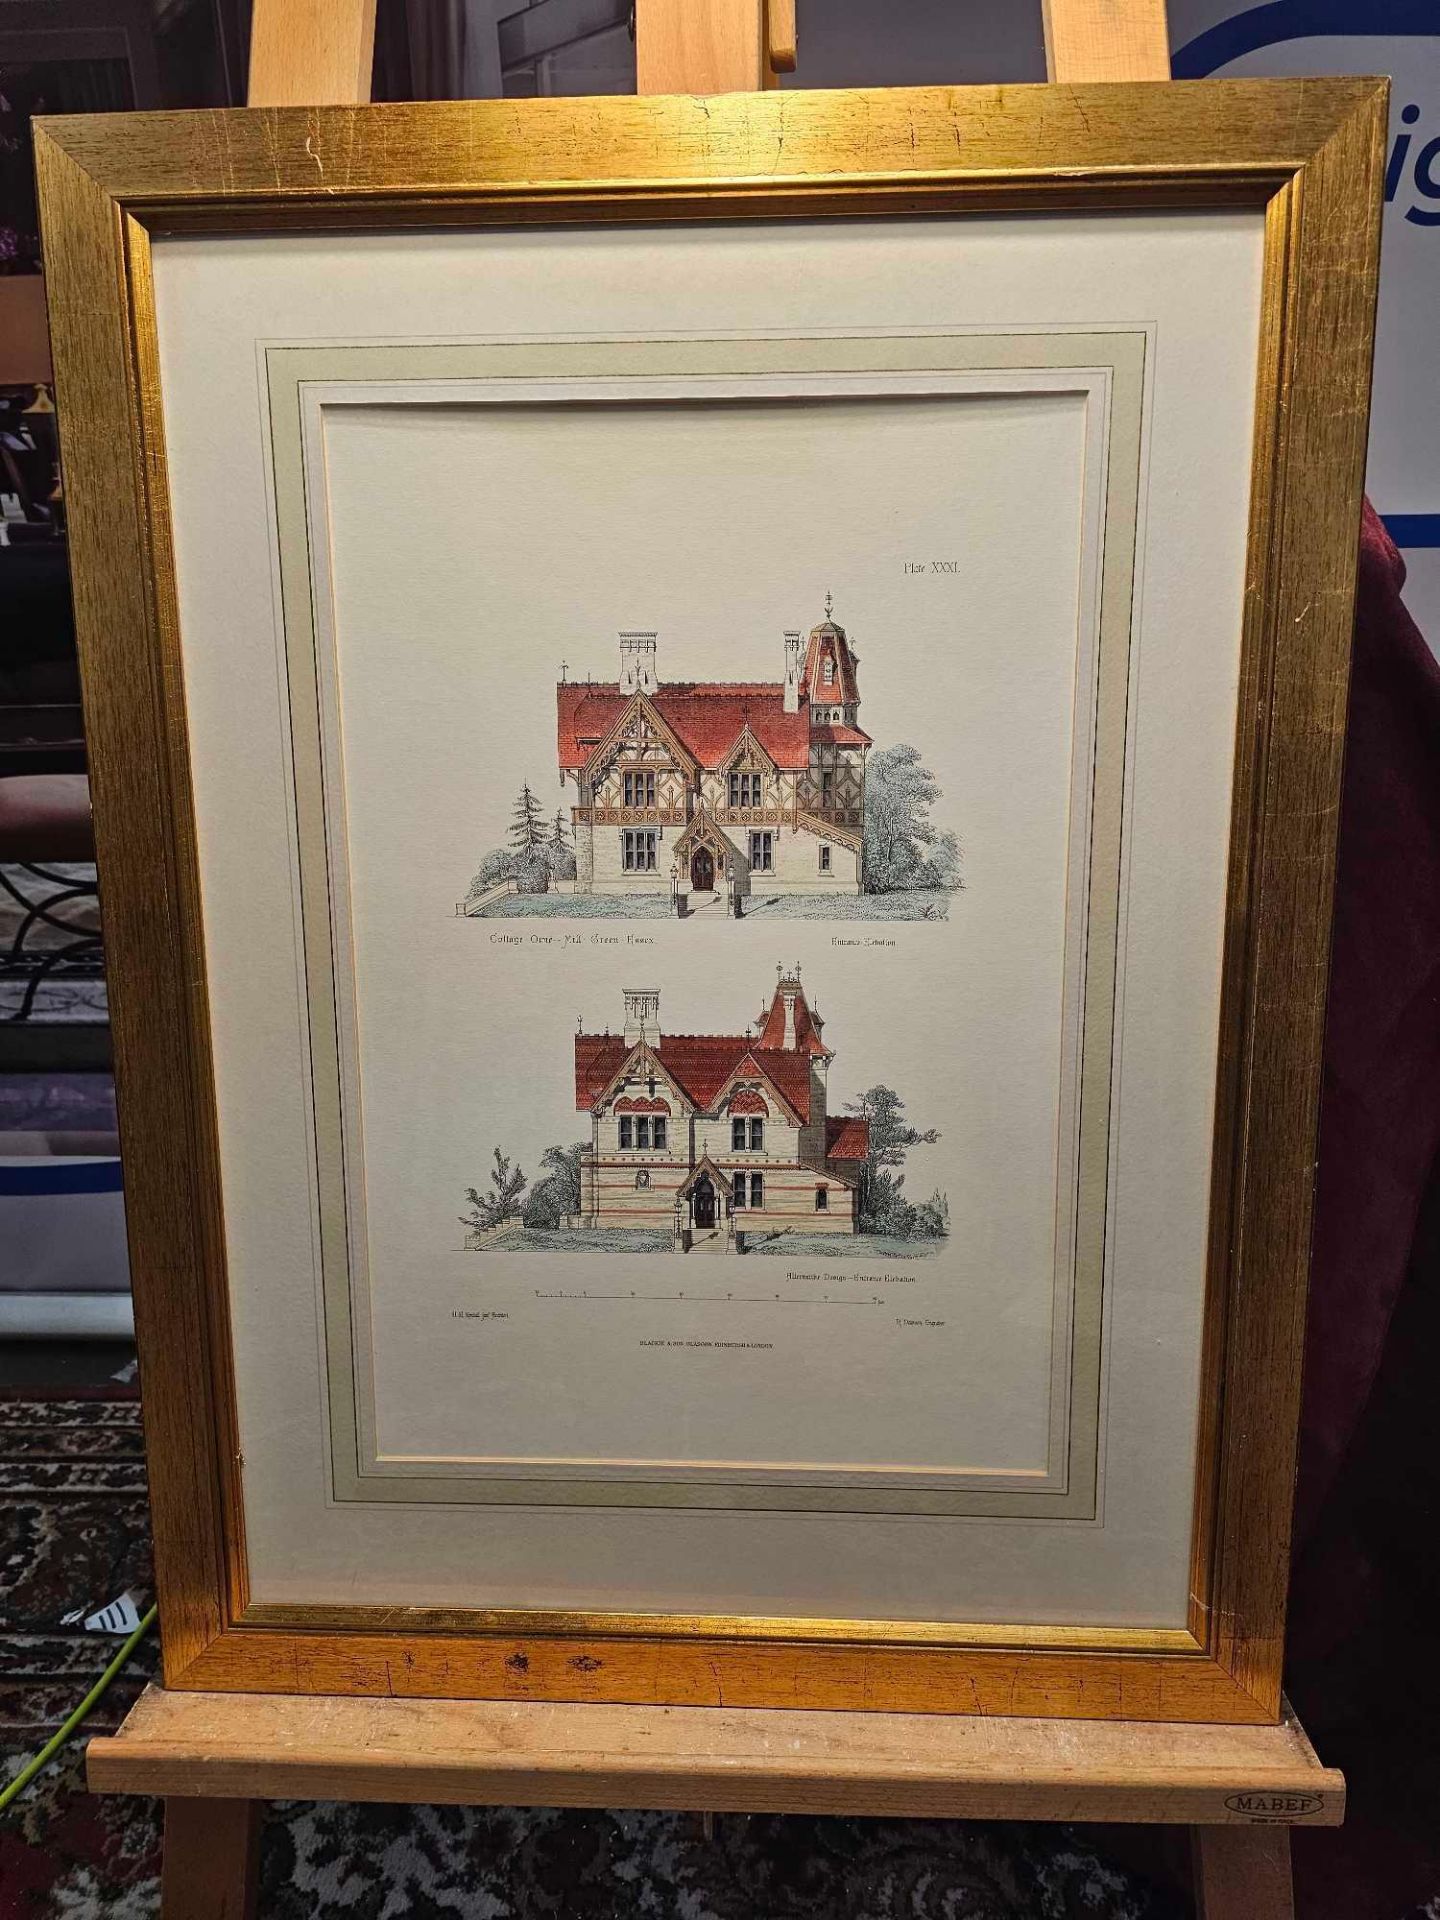 3 x Framed Prints (1) 1868 Architectural Print Cottage Orne Moulin Essex (2) Villa At Grange - Image 3 of 4